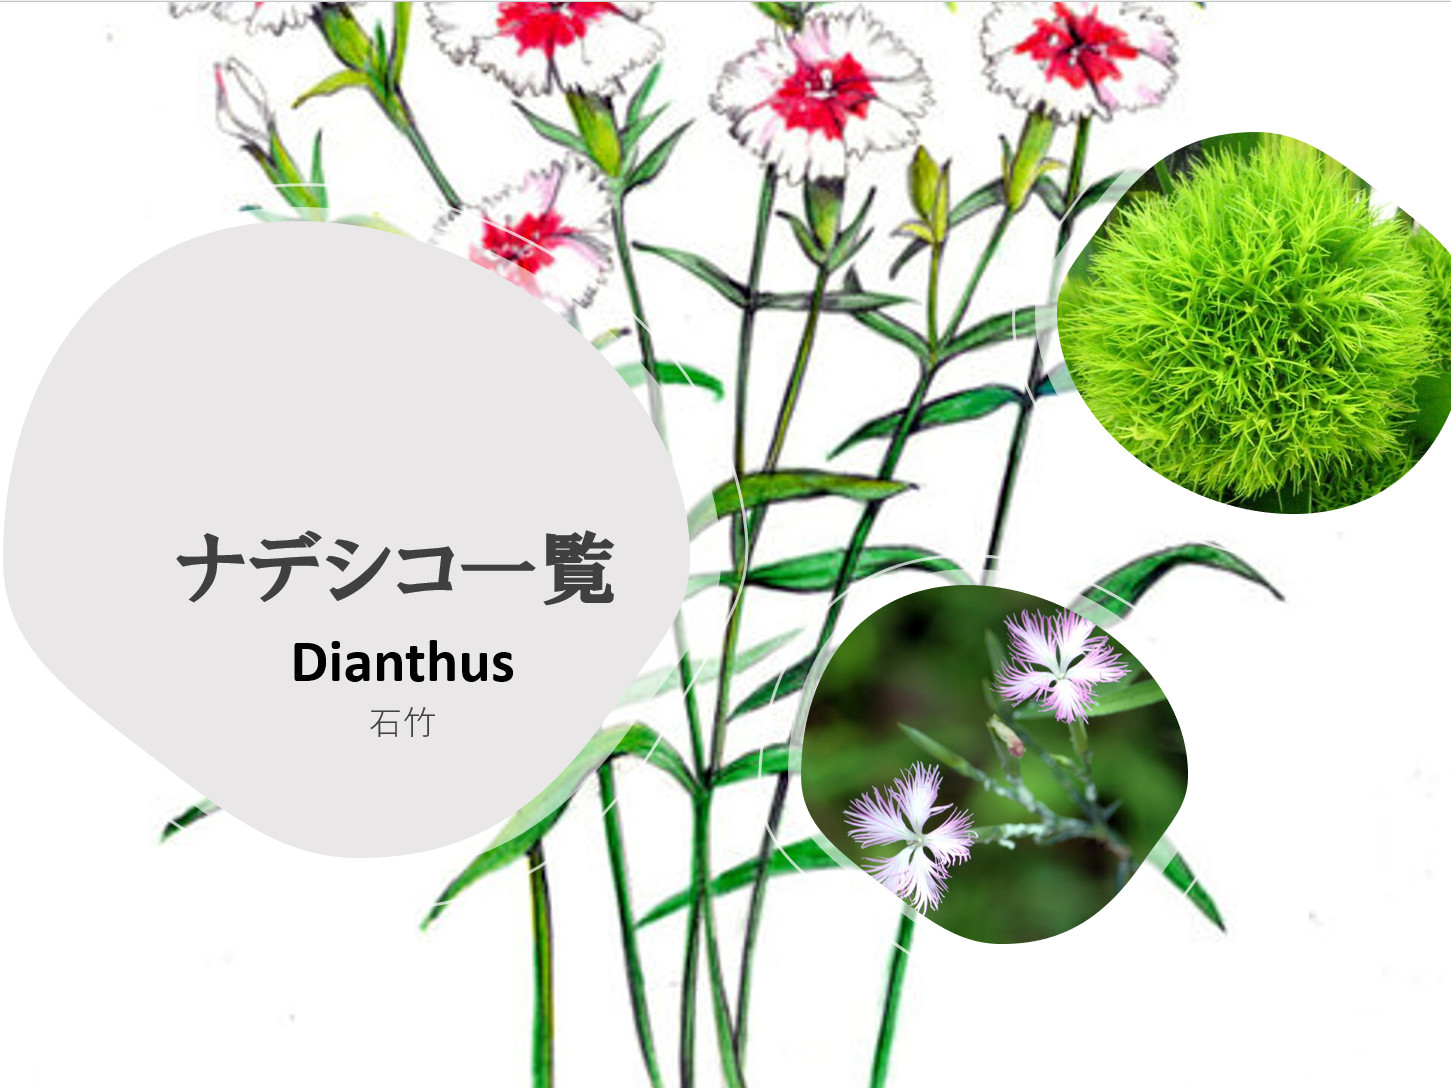 
<br />Dianthus